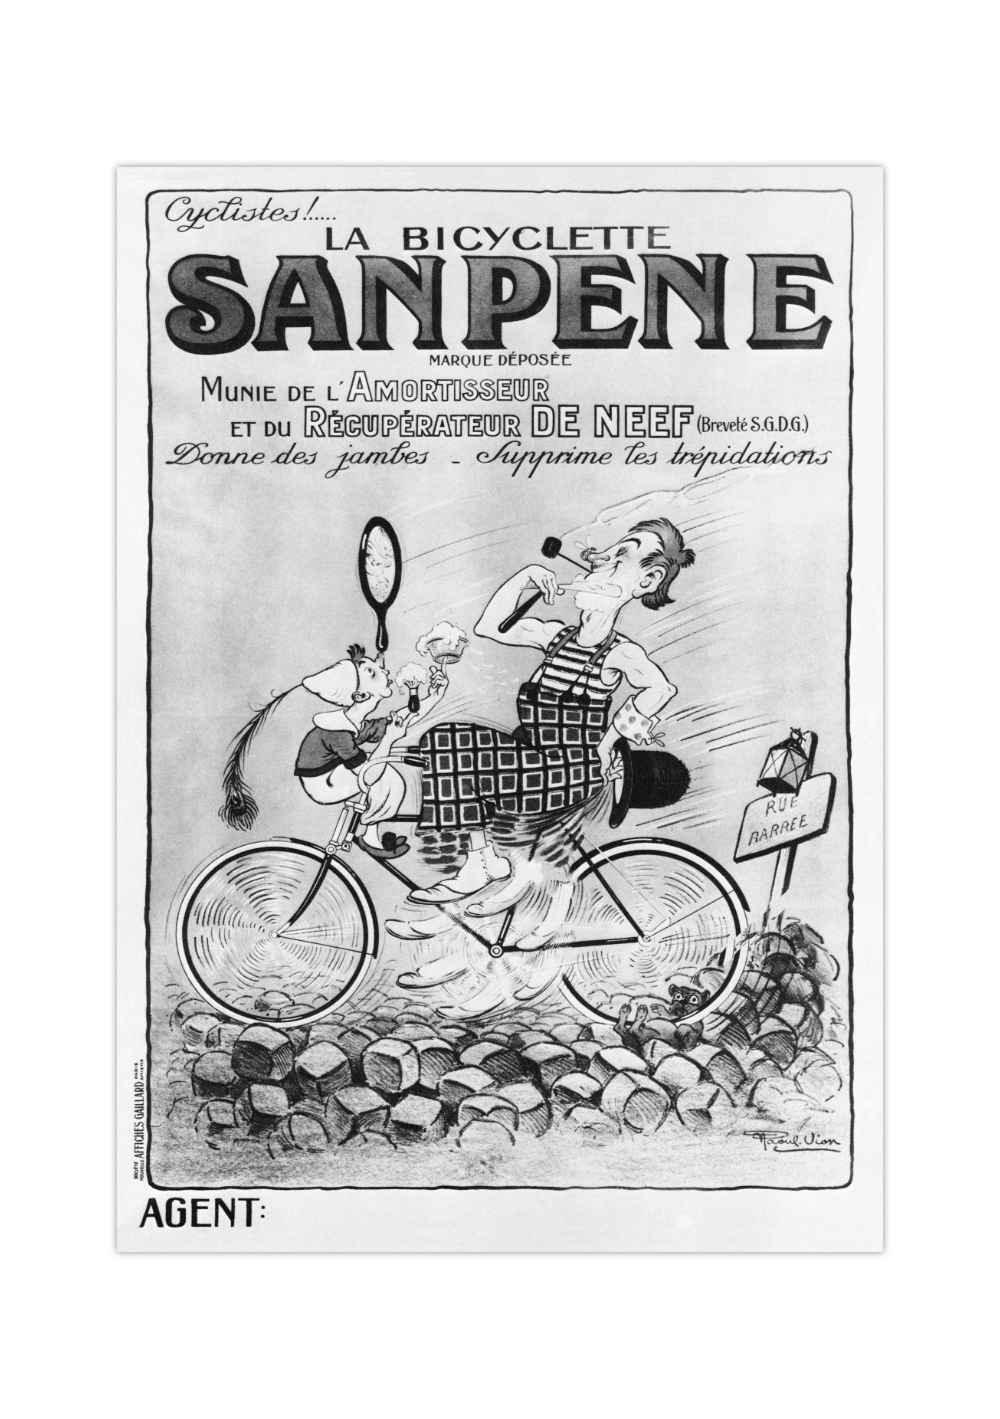 Bei dem Poster handelt es sich um den Nachdruck einer witzig dargestellten französischen Werbung für Fahrräder und/oder Rasierer. 